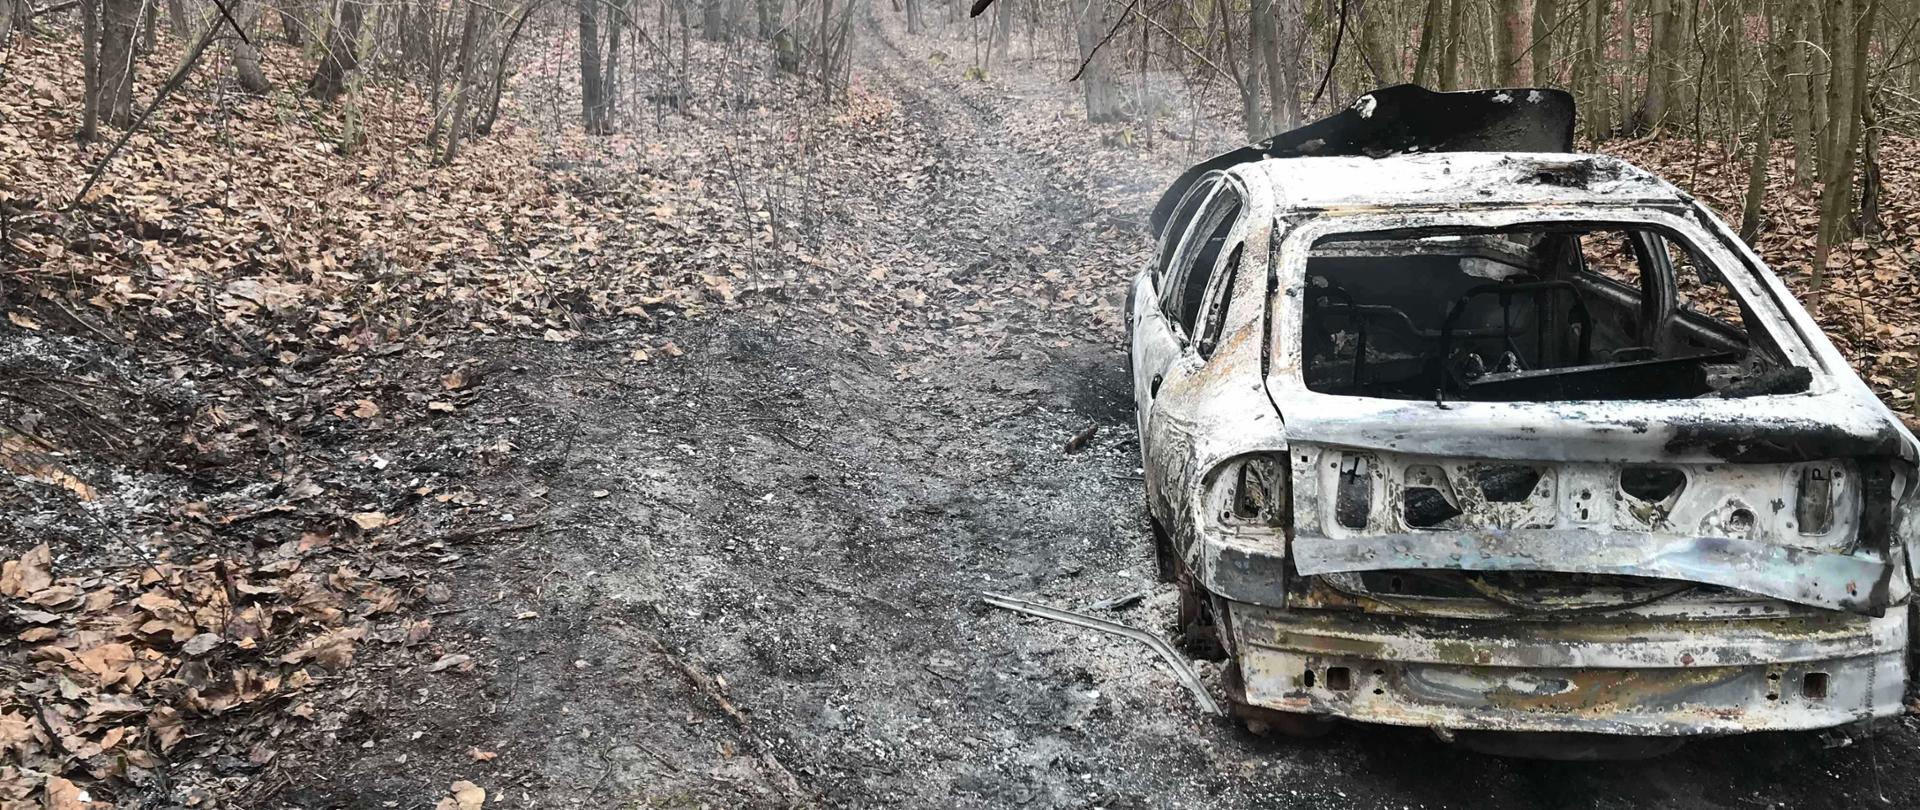 Pożar samochodu i ściółki w lesie w miejscowości Skrzypaczowice gmina Łoniów
Opis Alternatywny: Zdjęcie przedstawia samochód osobowy po ugaszeniu pożaru, samochód stoi w leśnej dróżce, obok widać wypaloną ściółkę leśną.
